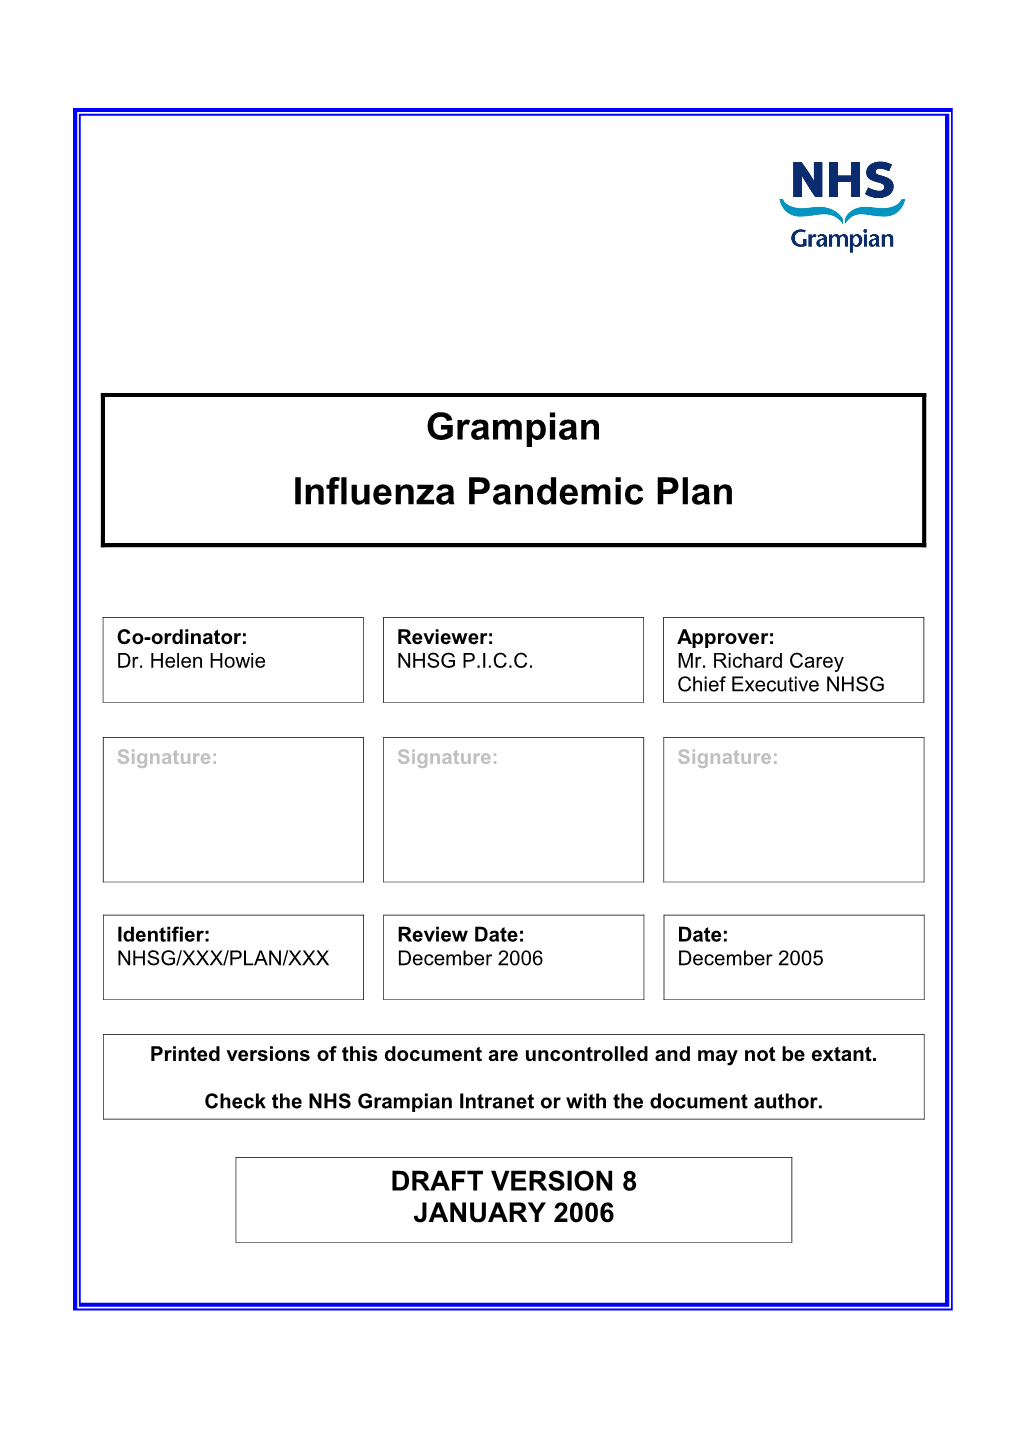 NHS Grampian Influenza Pandemic Plan